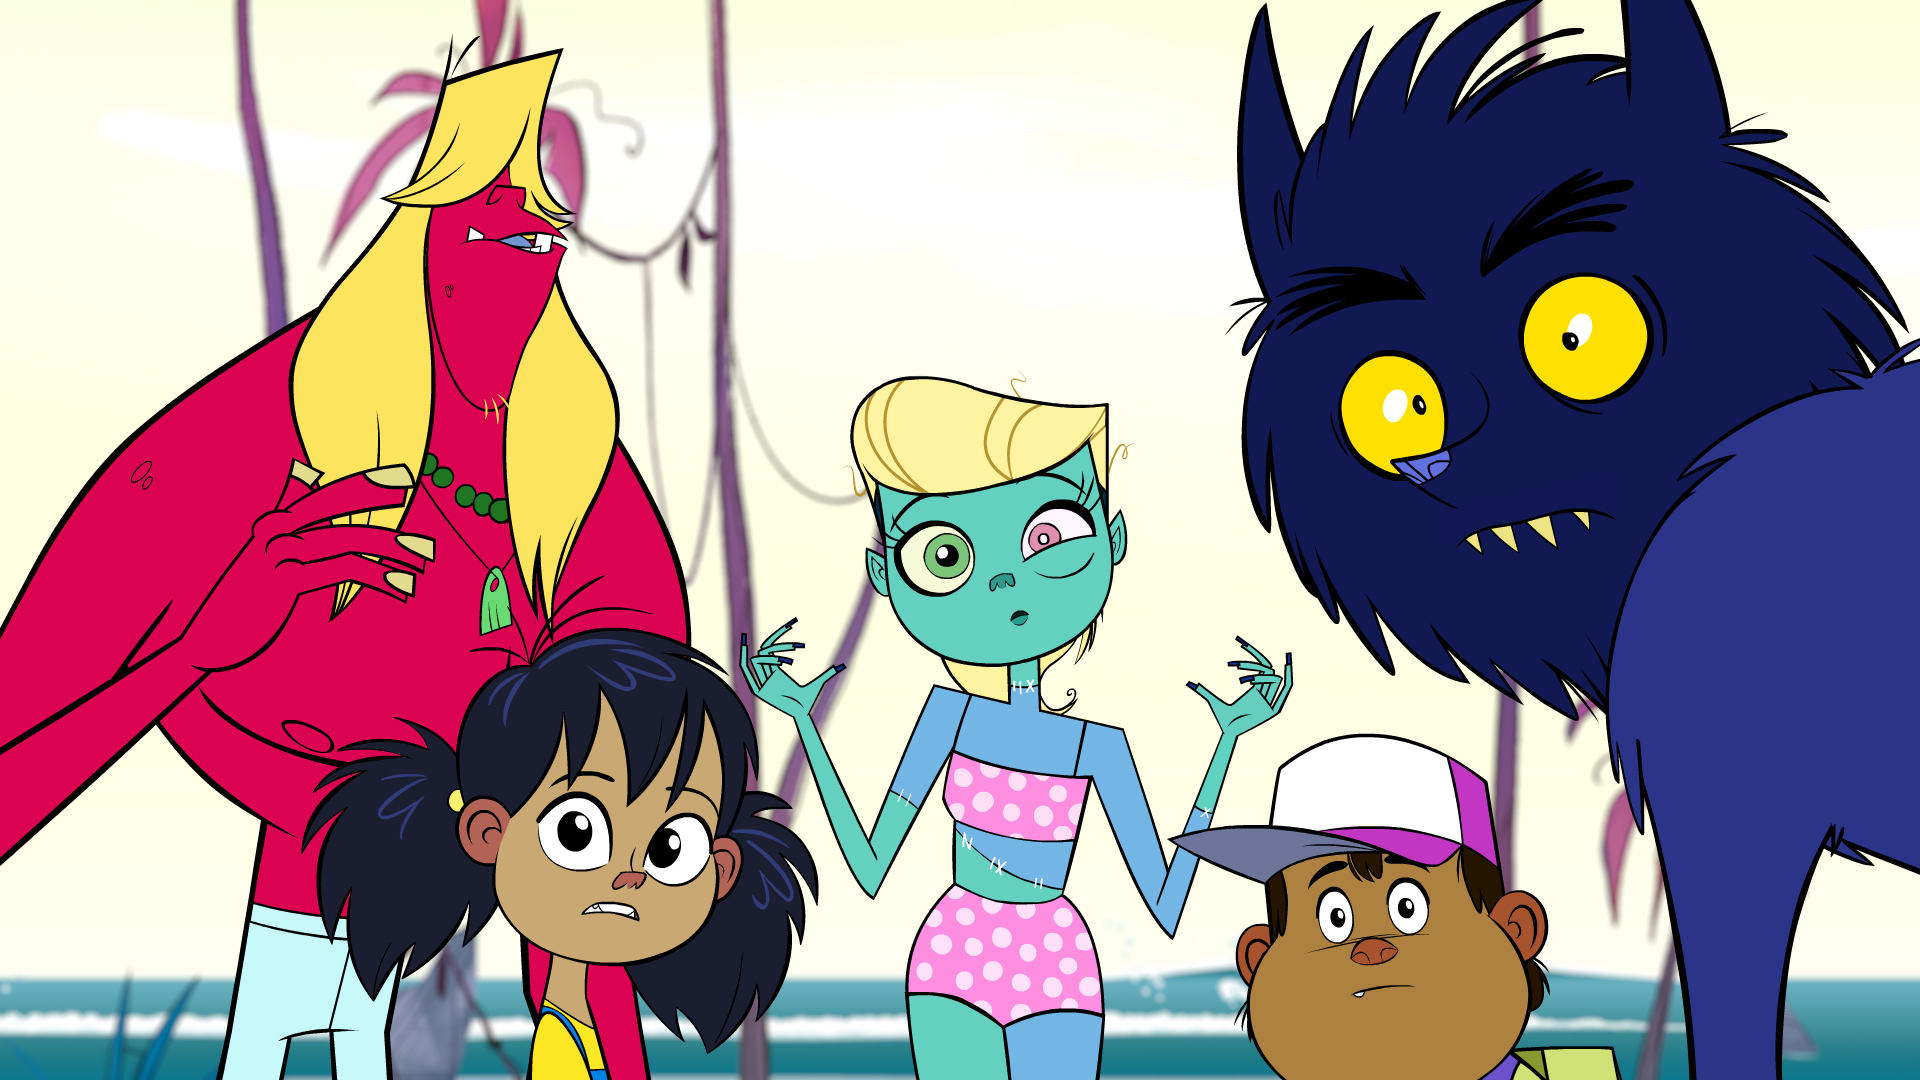 Monster Beach arriva su Cartoon Network (canale 607 di Sky). Orchi, zombie e creature marine popolano la spiaggia di Monster Beach